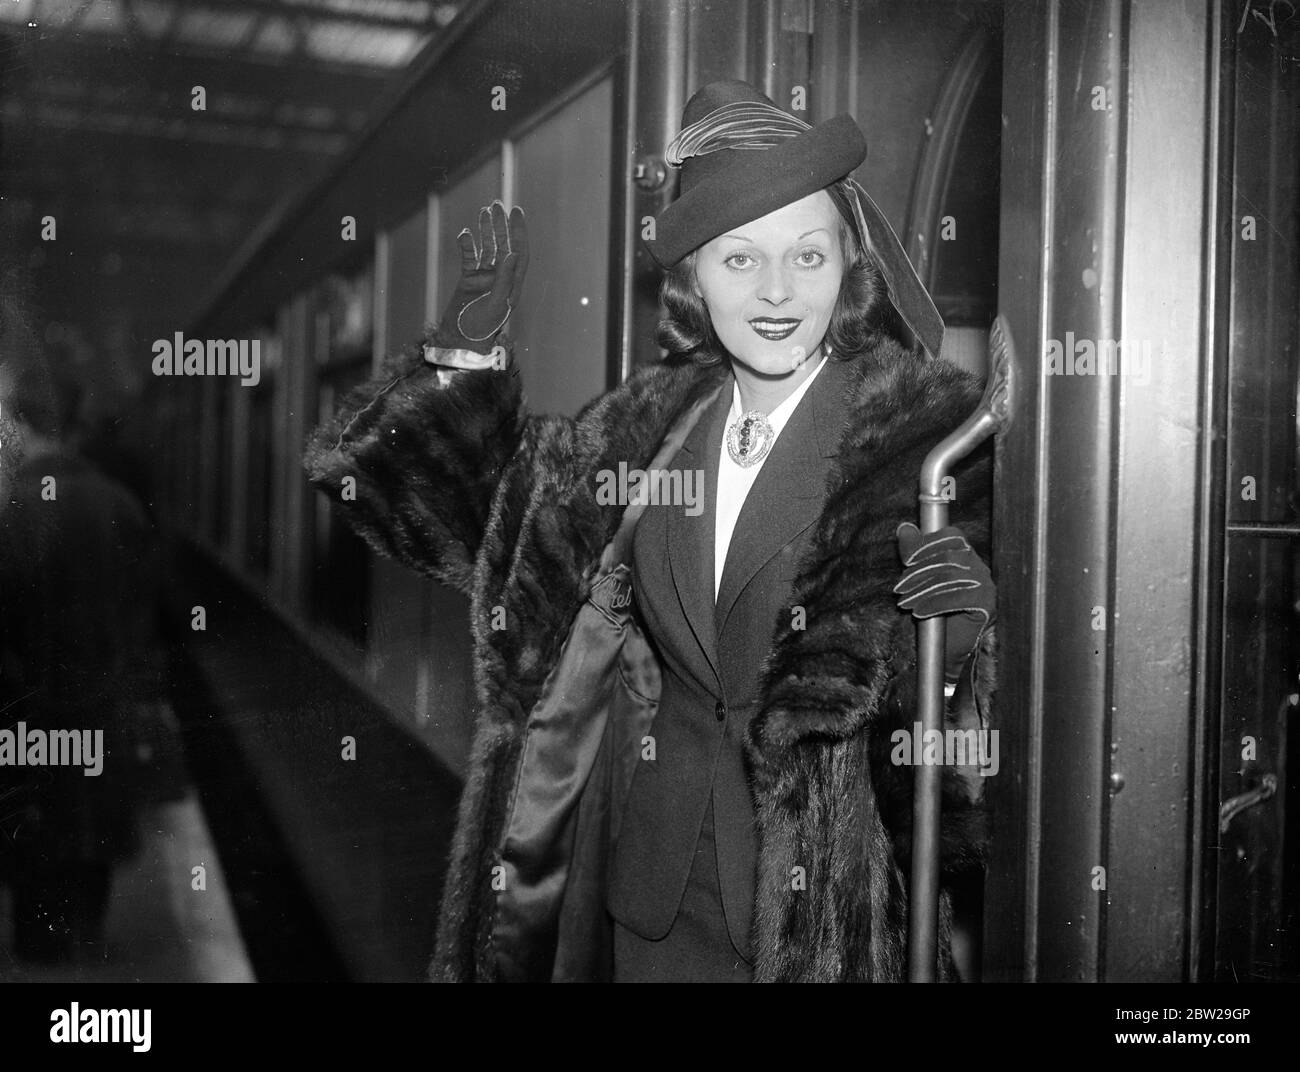 La actriz francesa llegó a Londres desde Hollywood, una vez una tocadora. La Srta. Ketti Gallian, la actriz francesa, que ha estado actuando con Warner Baxter y Fred Astaire en Hollywood, llegó a la estación de Waterloo, Londres, en el tren 'Normandie'. Puede aparecer en el escenario en Londres y trabajar en películas británicas. La señorita Gallian era anteriormente una 'Midinette' en la tienda de ropa de su madre en la Riviera. 29 de noviembre de 1937 Foto de stock